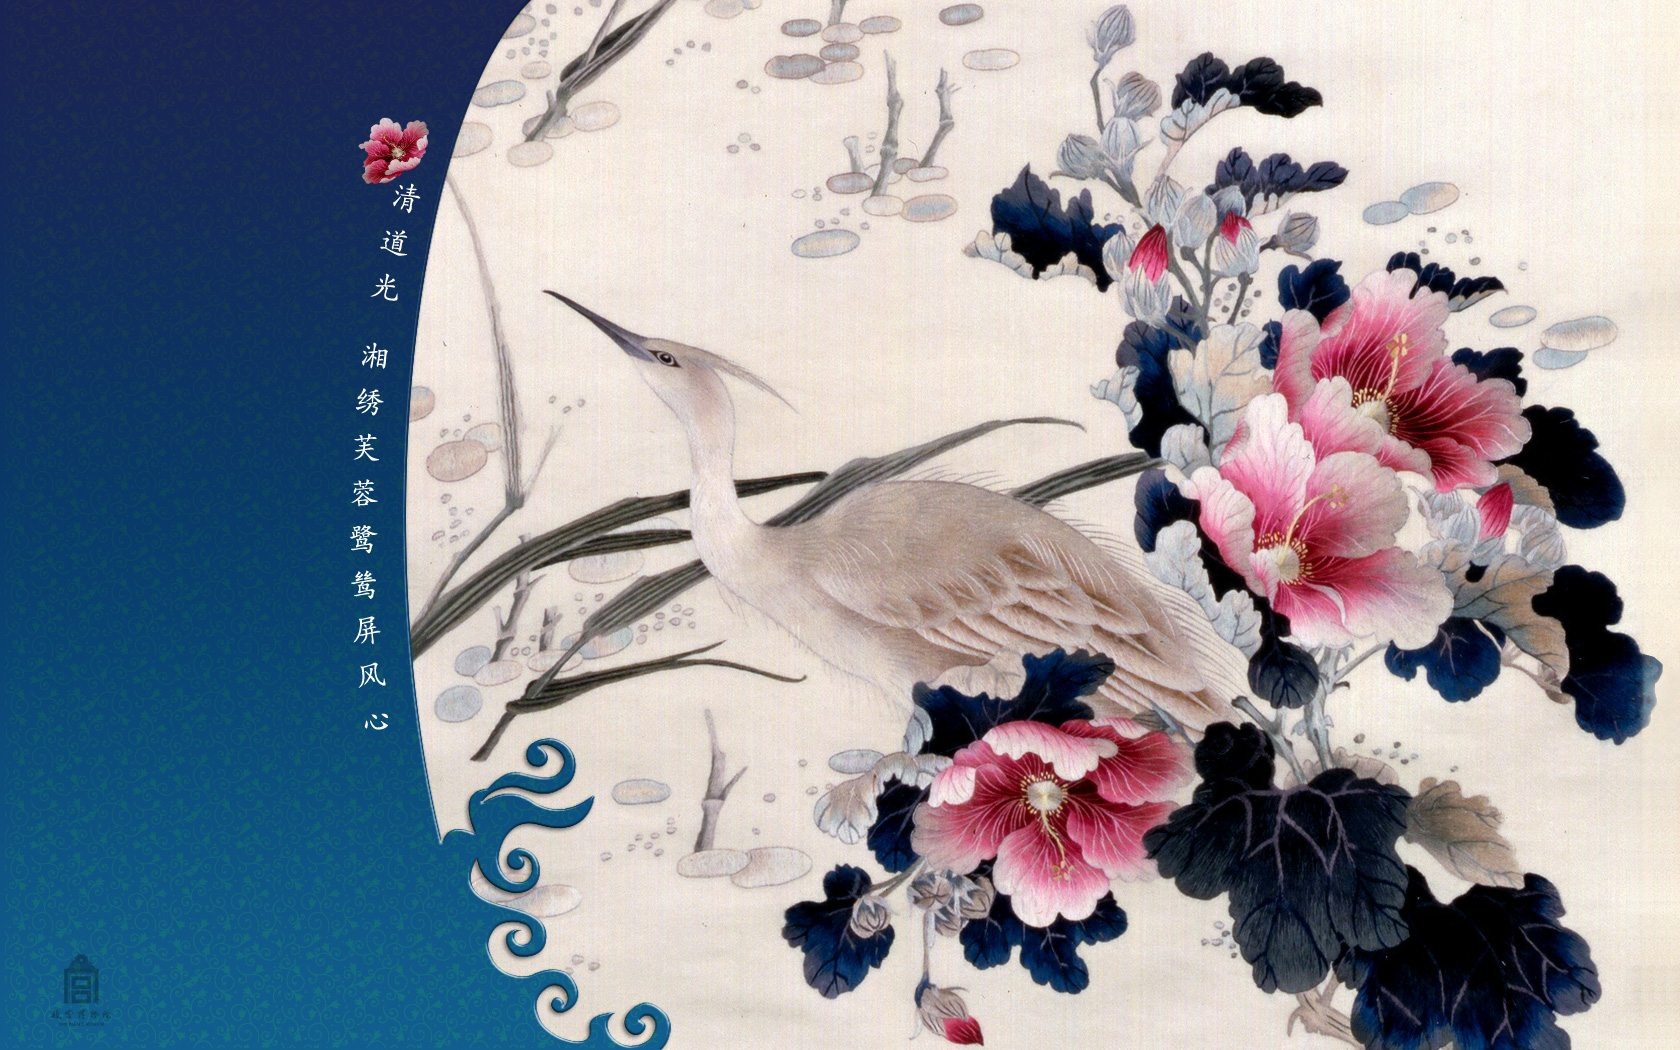 北京故宫博物院 文物展壁纸(二)23 - 1680x1050